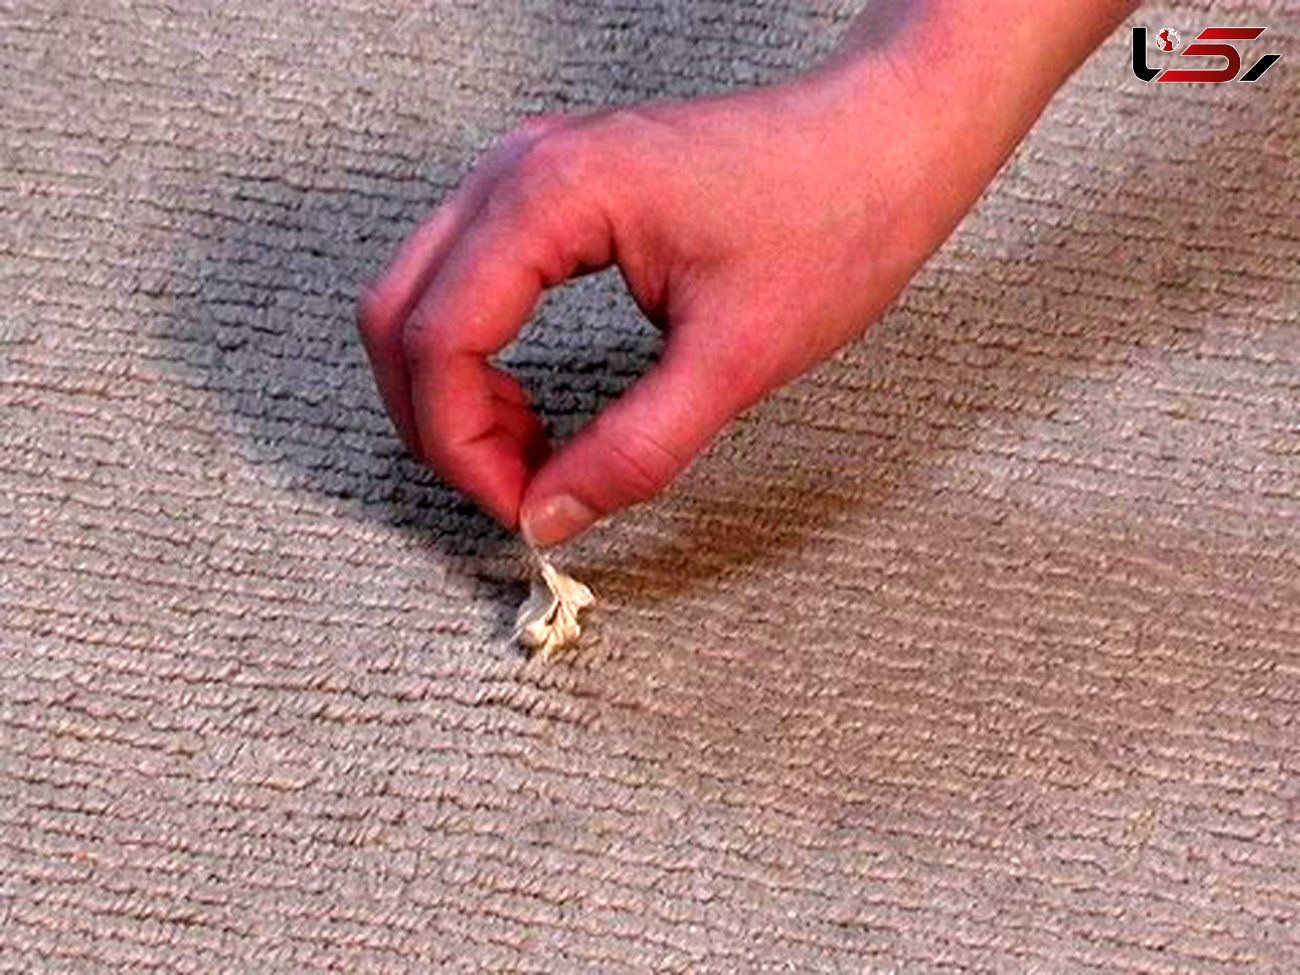 روش های جالب برای از بین بردن لکه آدامس روی فرش